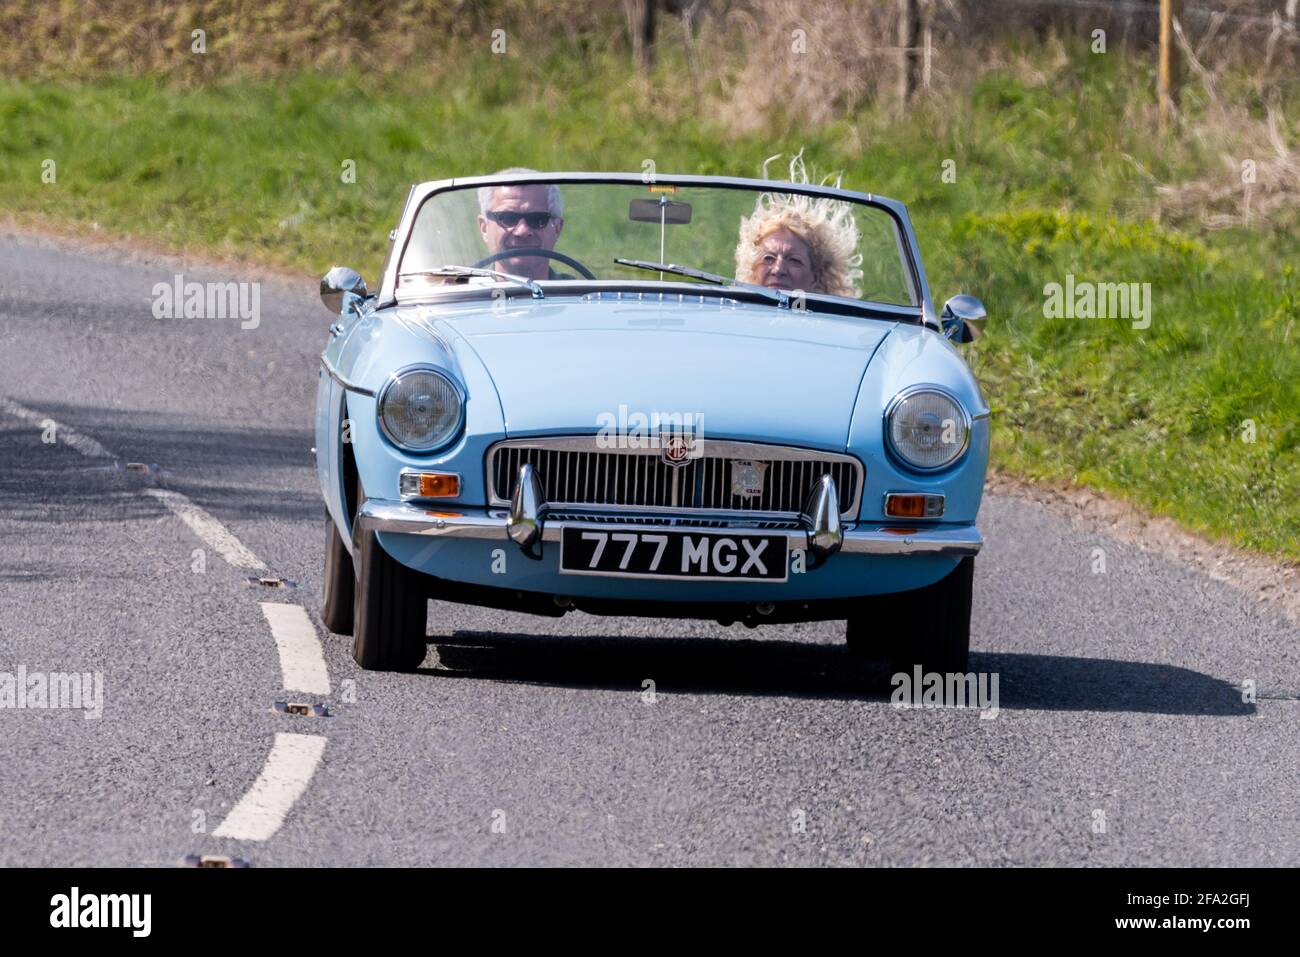 Vento in acconciatura, coppia in una classica auto sportiva blu MGB, Alresford, Hampshire, UK Foto Stock